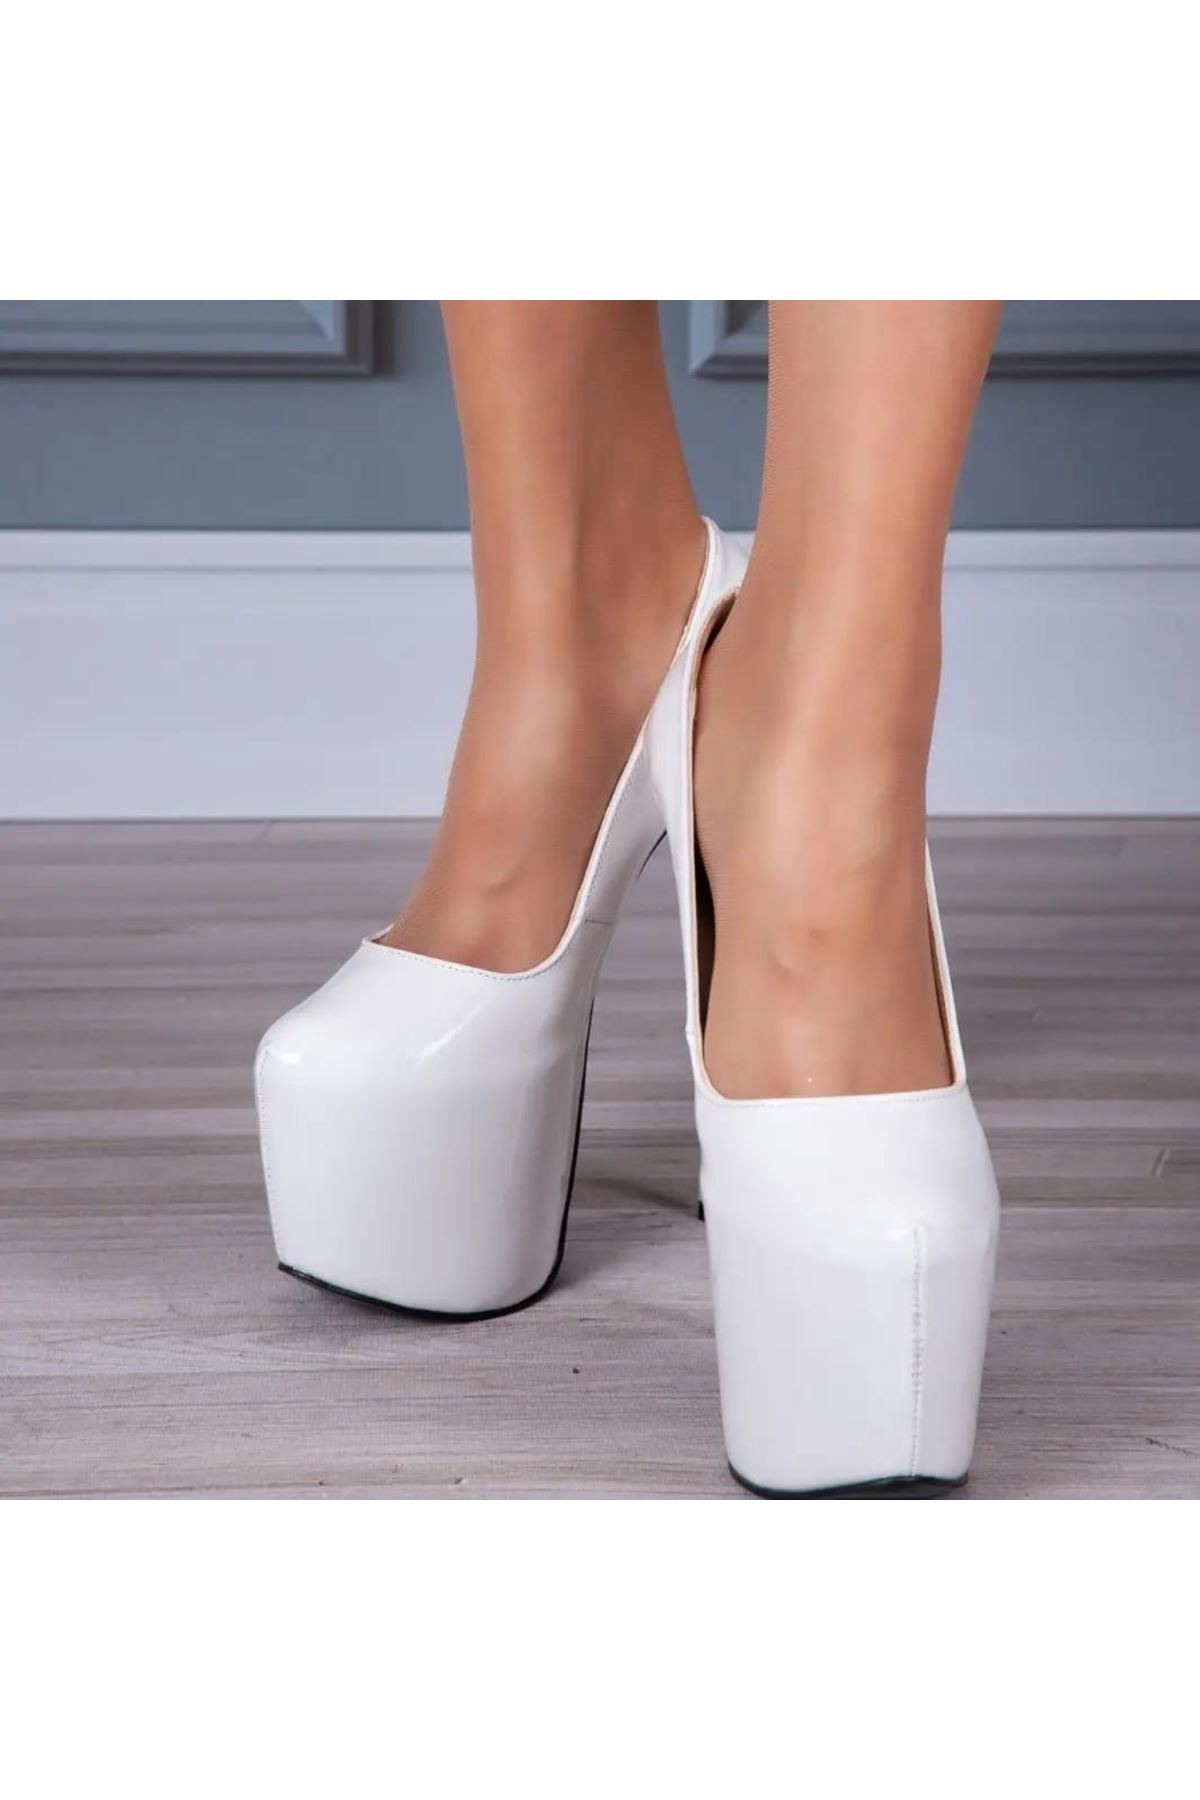 Josie Beyaz Rugan Yüksek Kadın Topuklu Ayakkabı 19 Cm